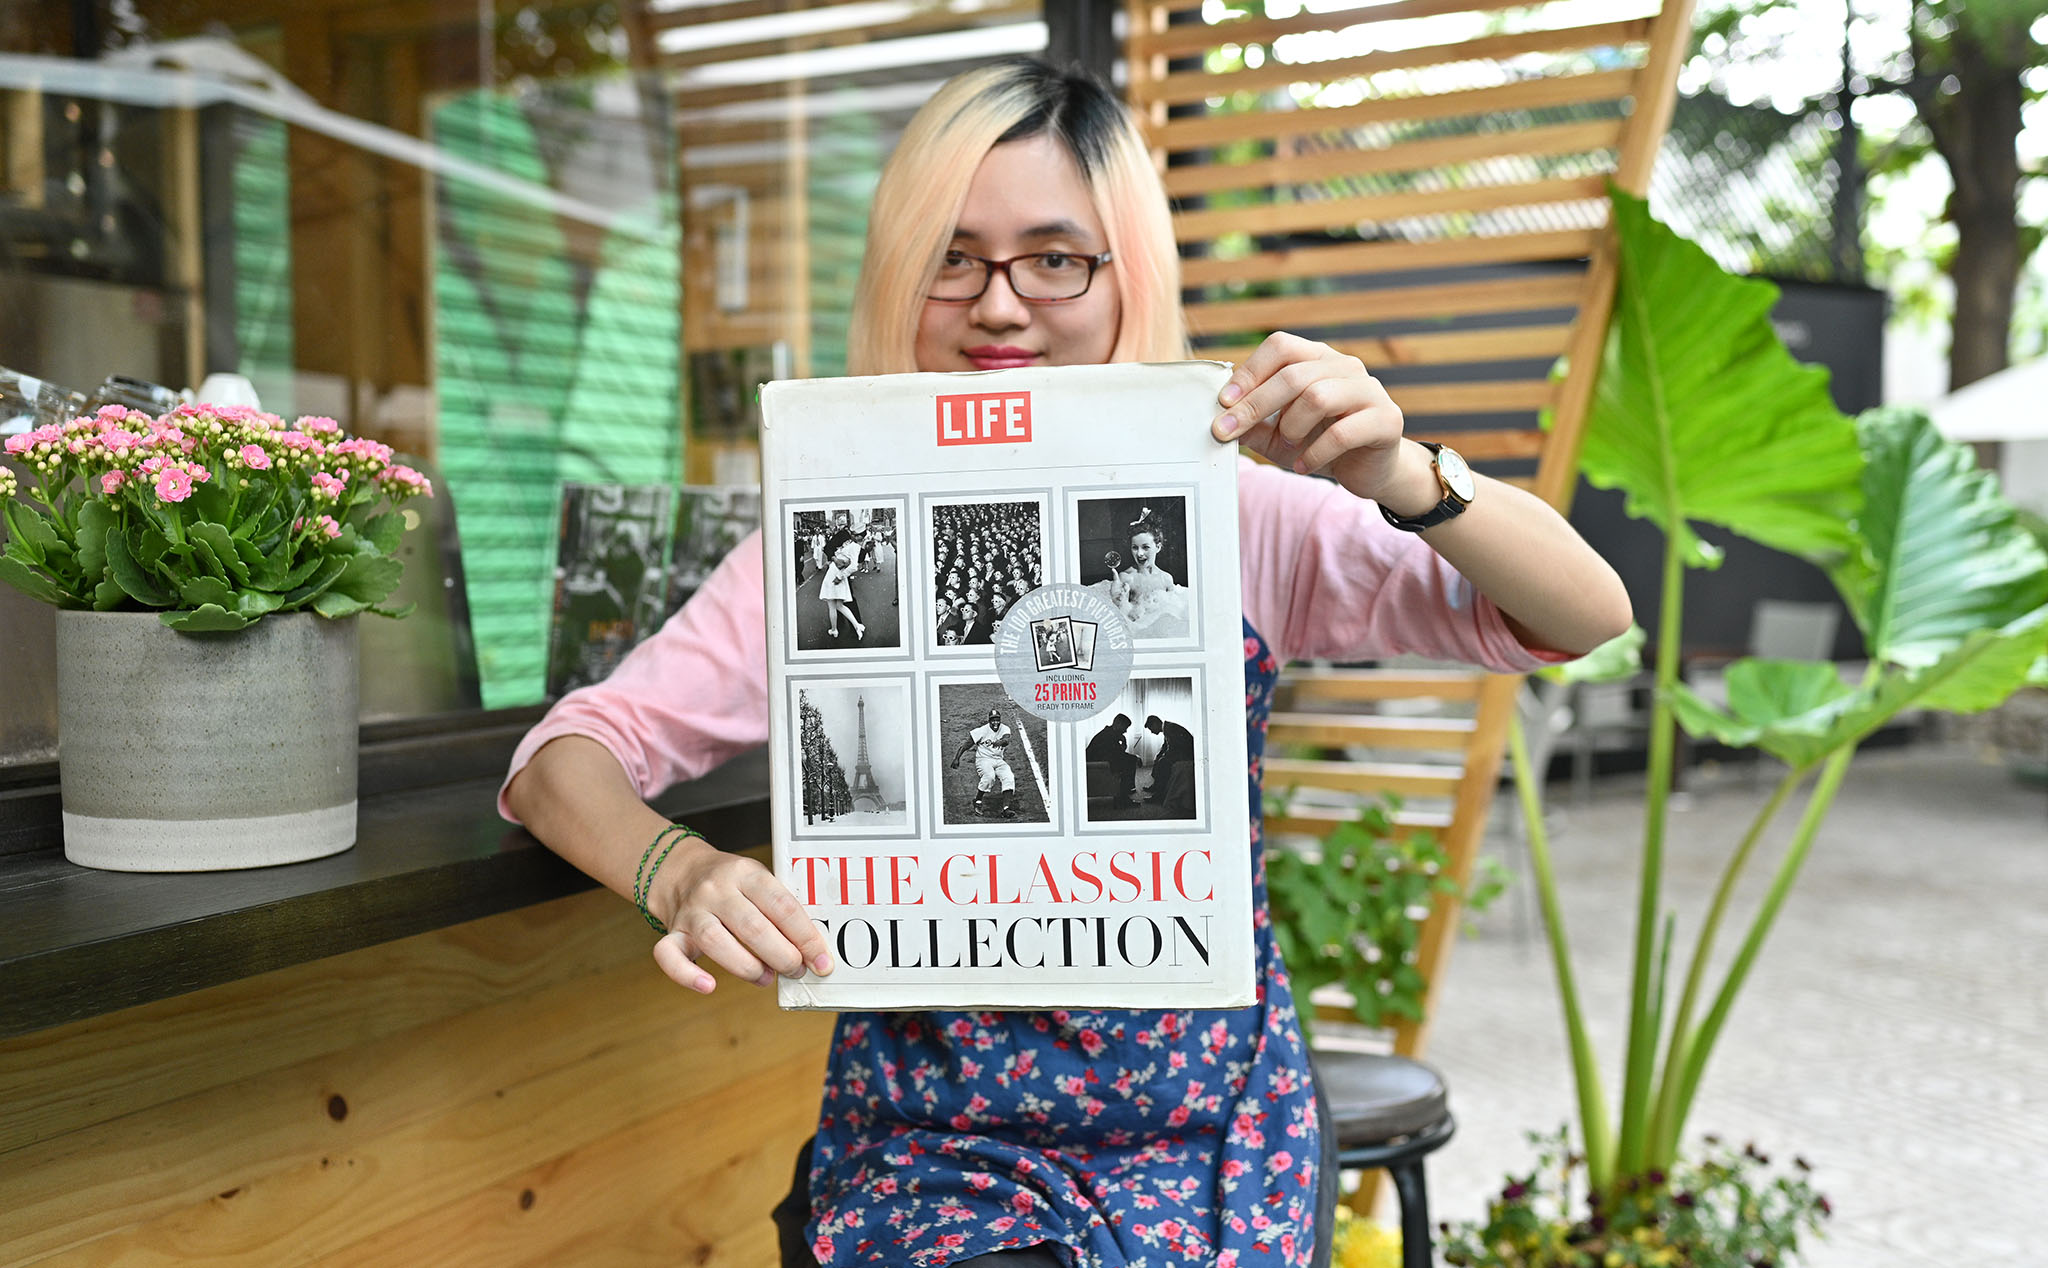 [Trên tay sách ảnh] The classic collection của tạp chí LIFE